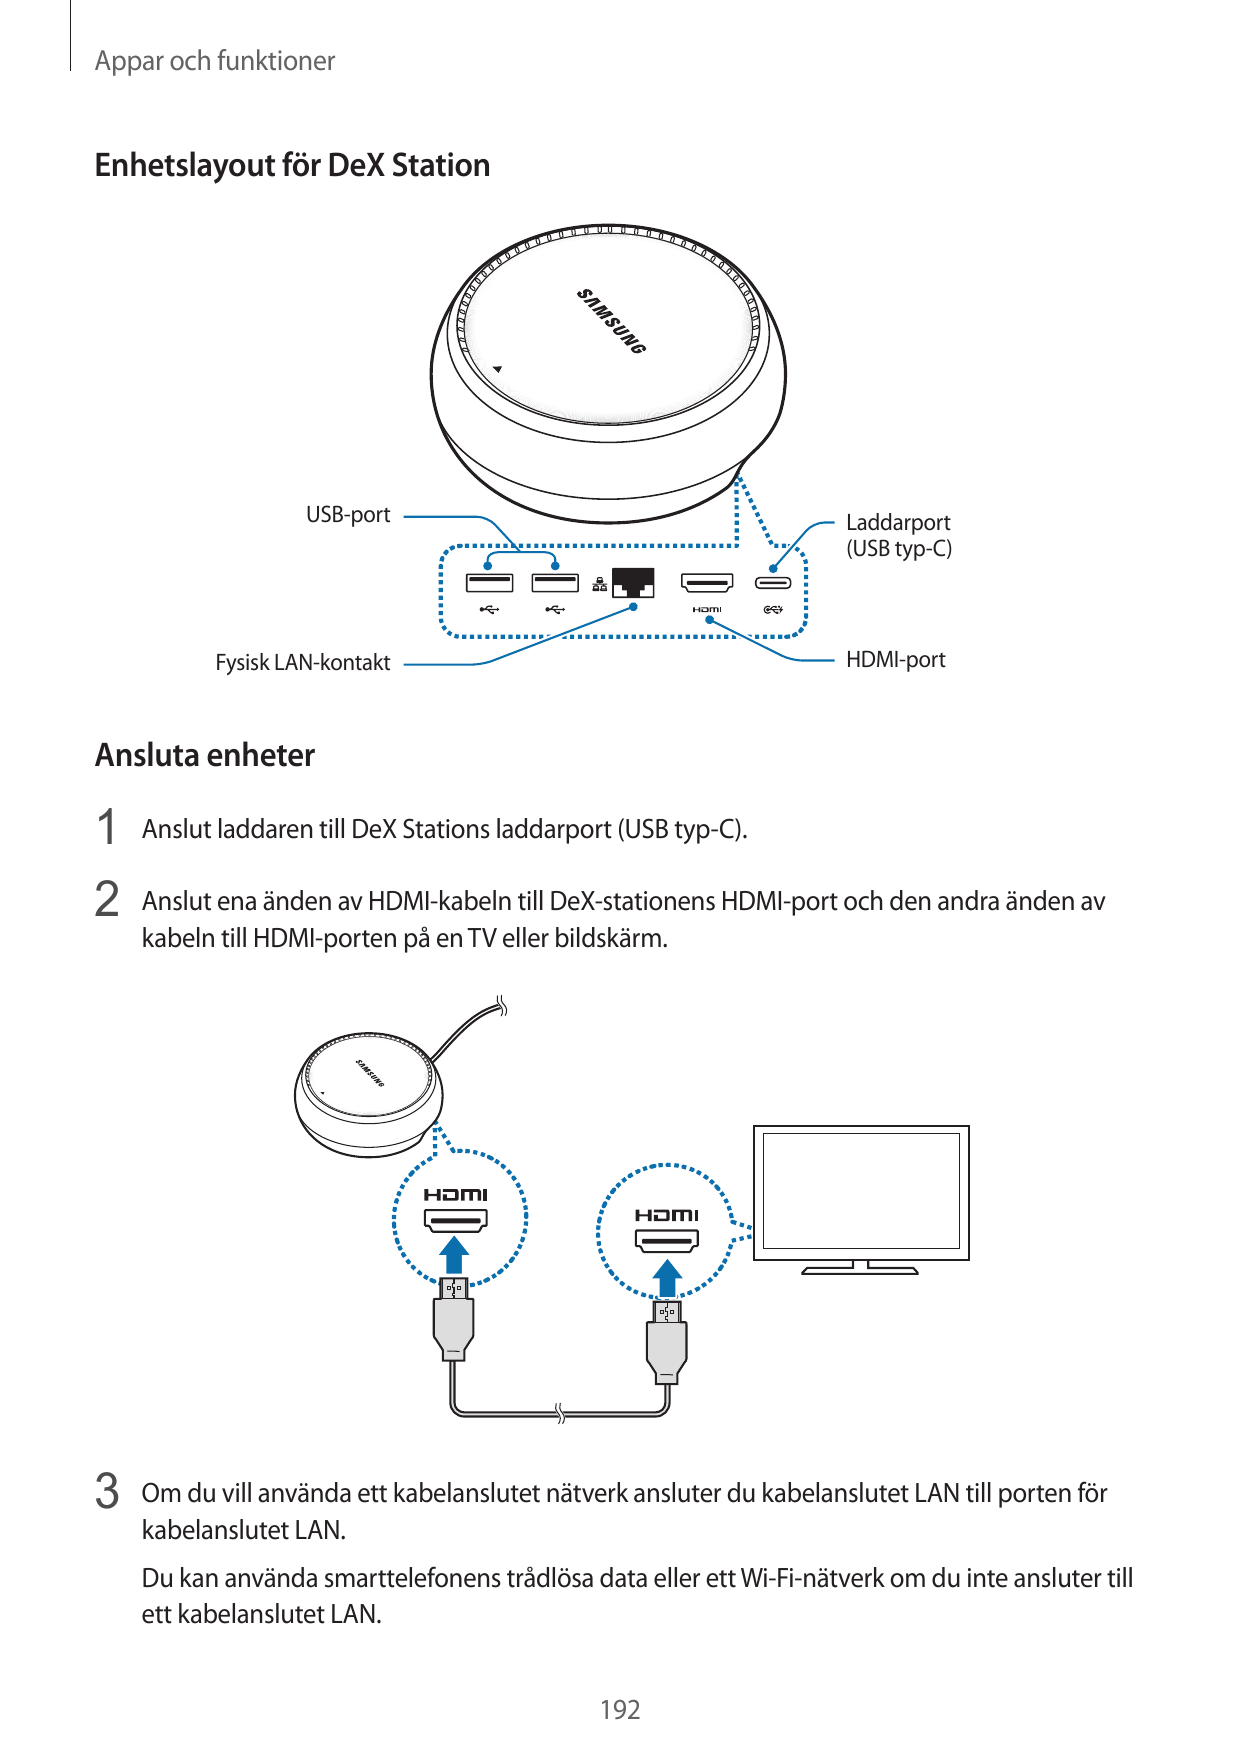 Appar och funktionerEnhetslayout för DeX StationUSB-portLaddarport(USB typ-C)Fysisk LAN-kontaktHDMI-portAnsluta enheter1 Anslut 